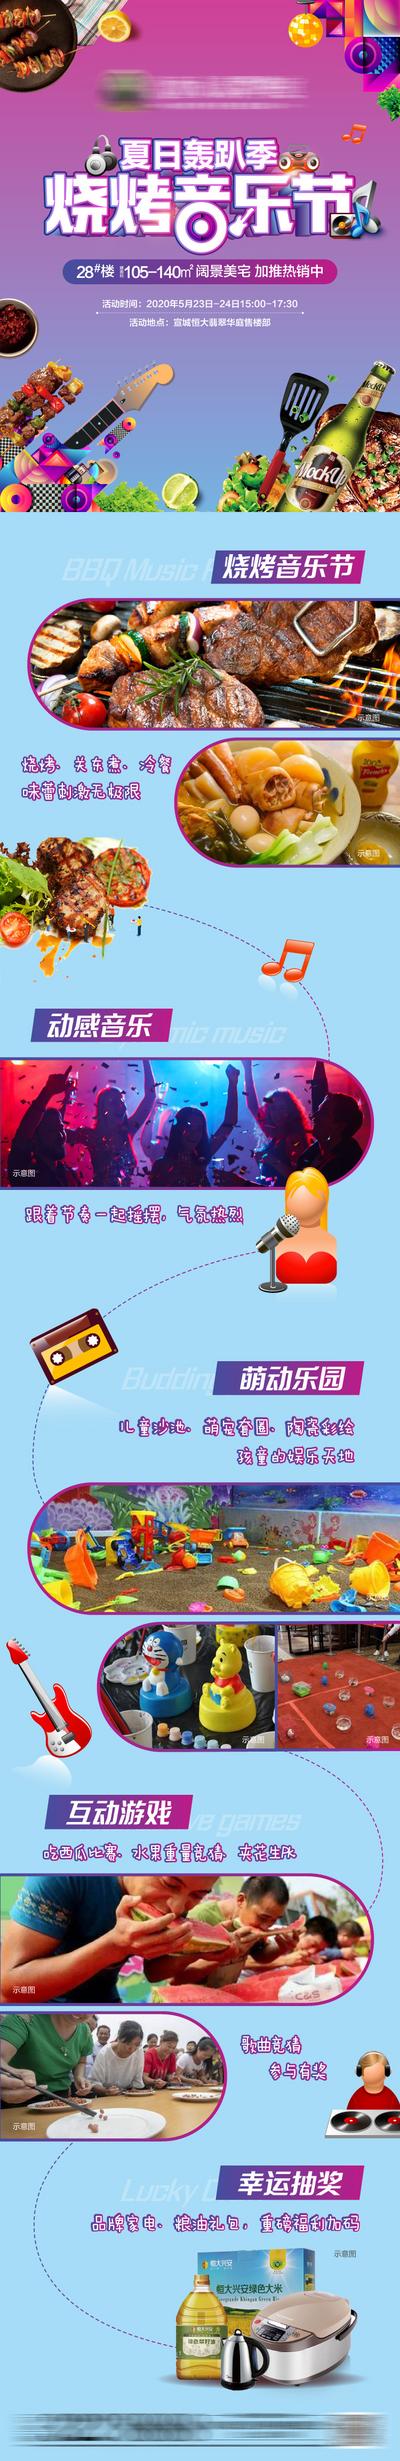 南门网 地产烧烤音乐节活动宣传长图